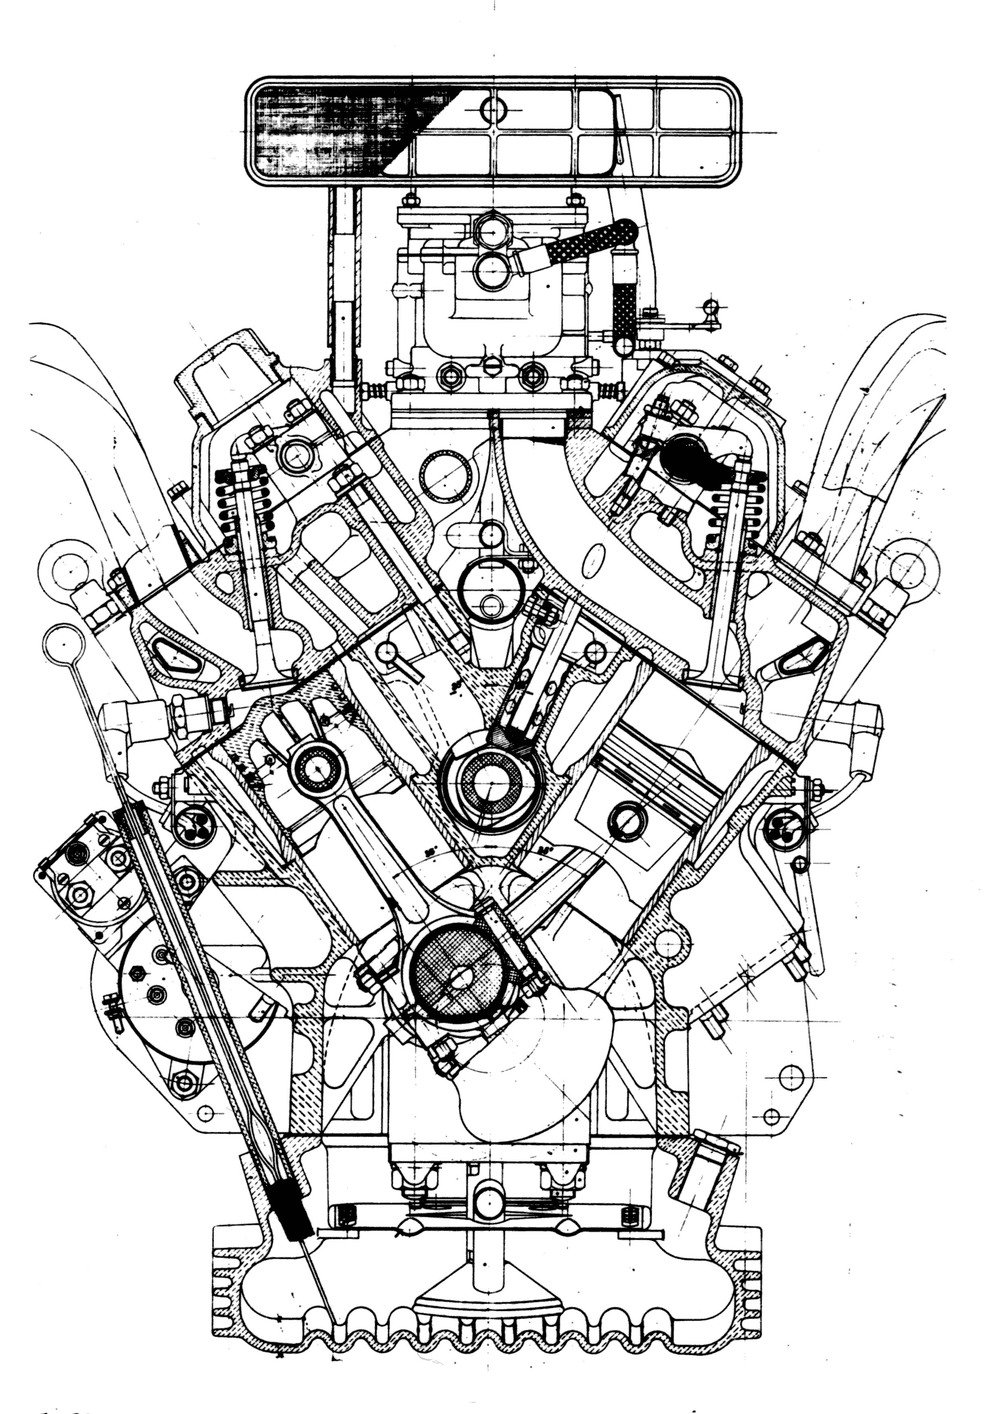 Il motore della Fiat 8V, apparso nel 1952, era inconsueto perch&eacute; le due bancate dei cilindri formavano un angolo di 70&deg; (e non di 90&deg;) e perch&eacute; i condotti di scarico fuoriuscivano dalla parte superiore delle teste, che quindi non erano dell&rsquo;usuale tipo a flusso trasversale